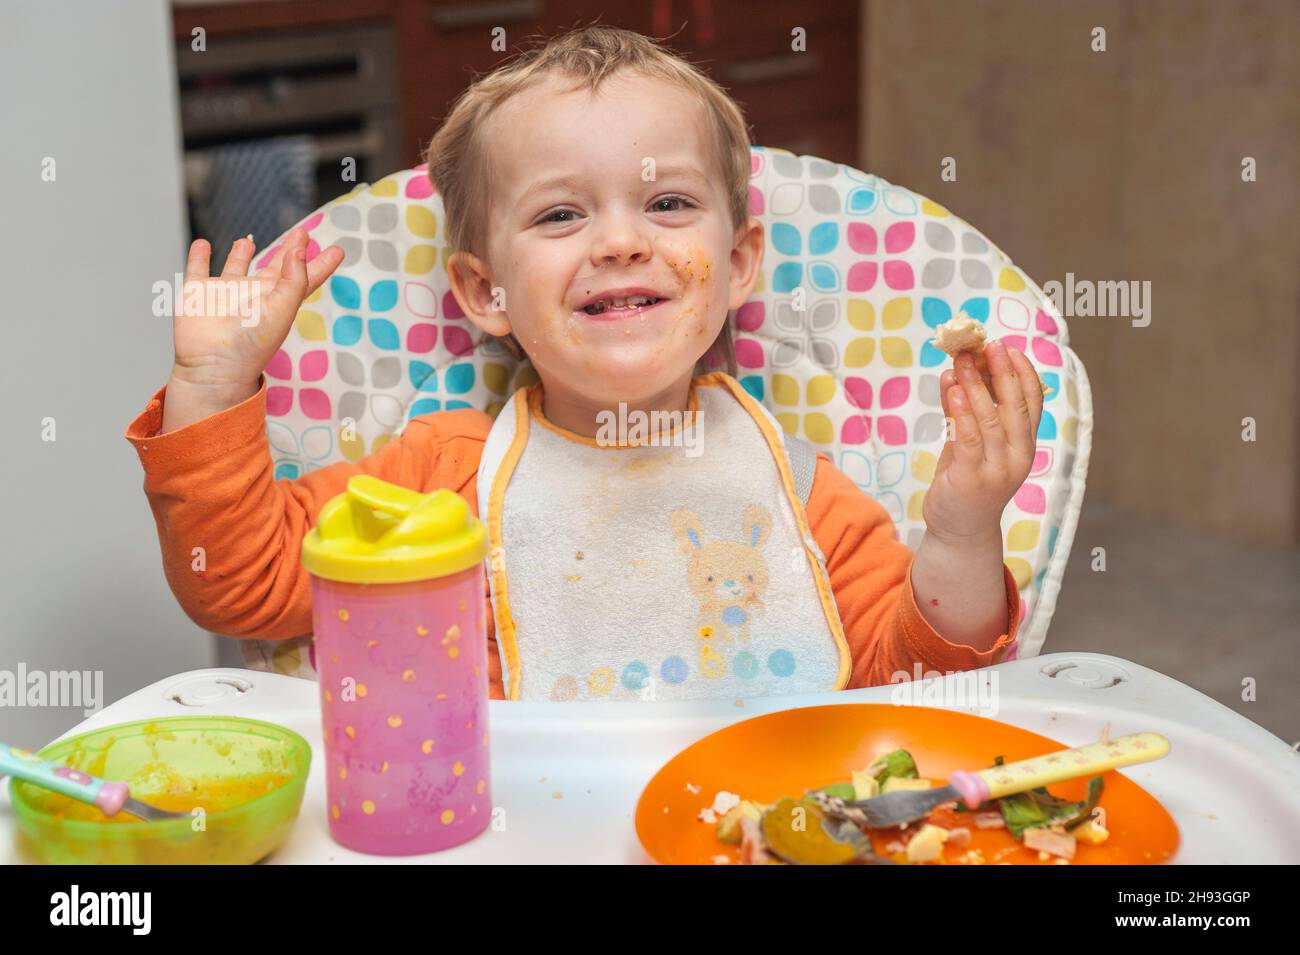 Une jeune fille de 2 ans sourit alors qu'elle mange un repas sur une chaise haute. Banque D'Images